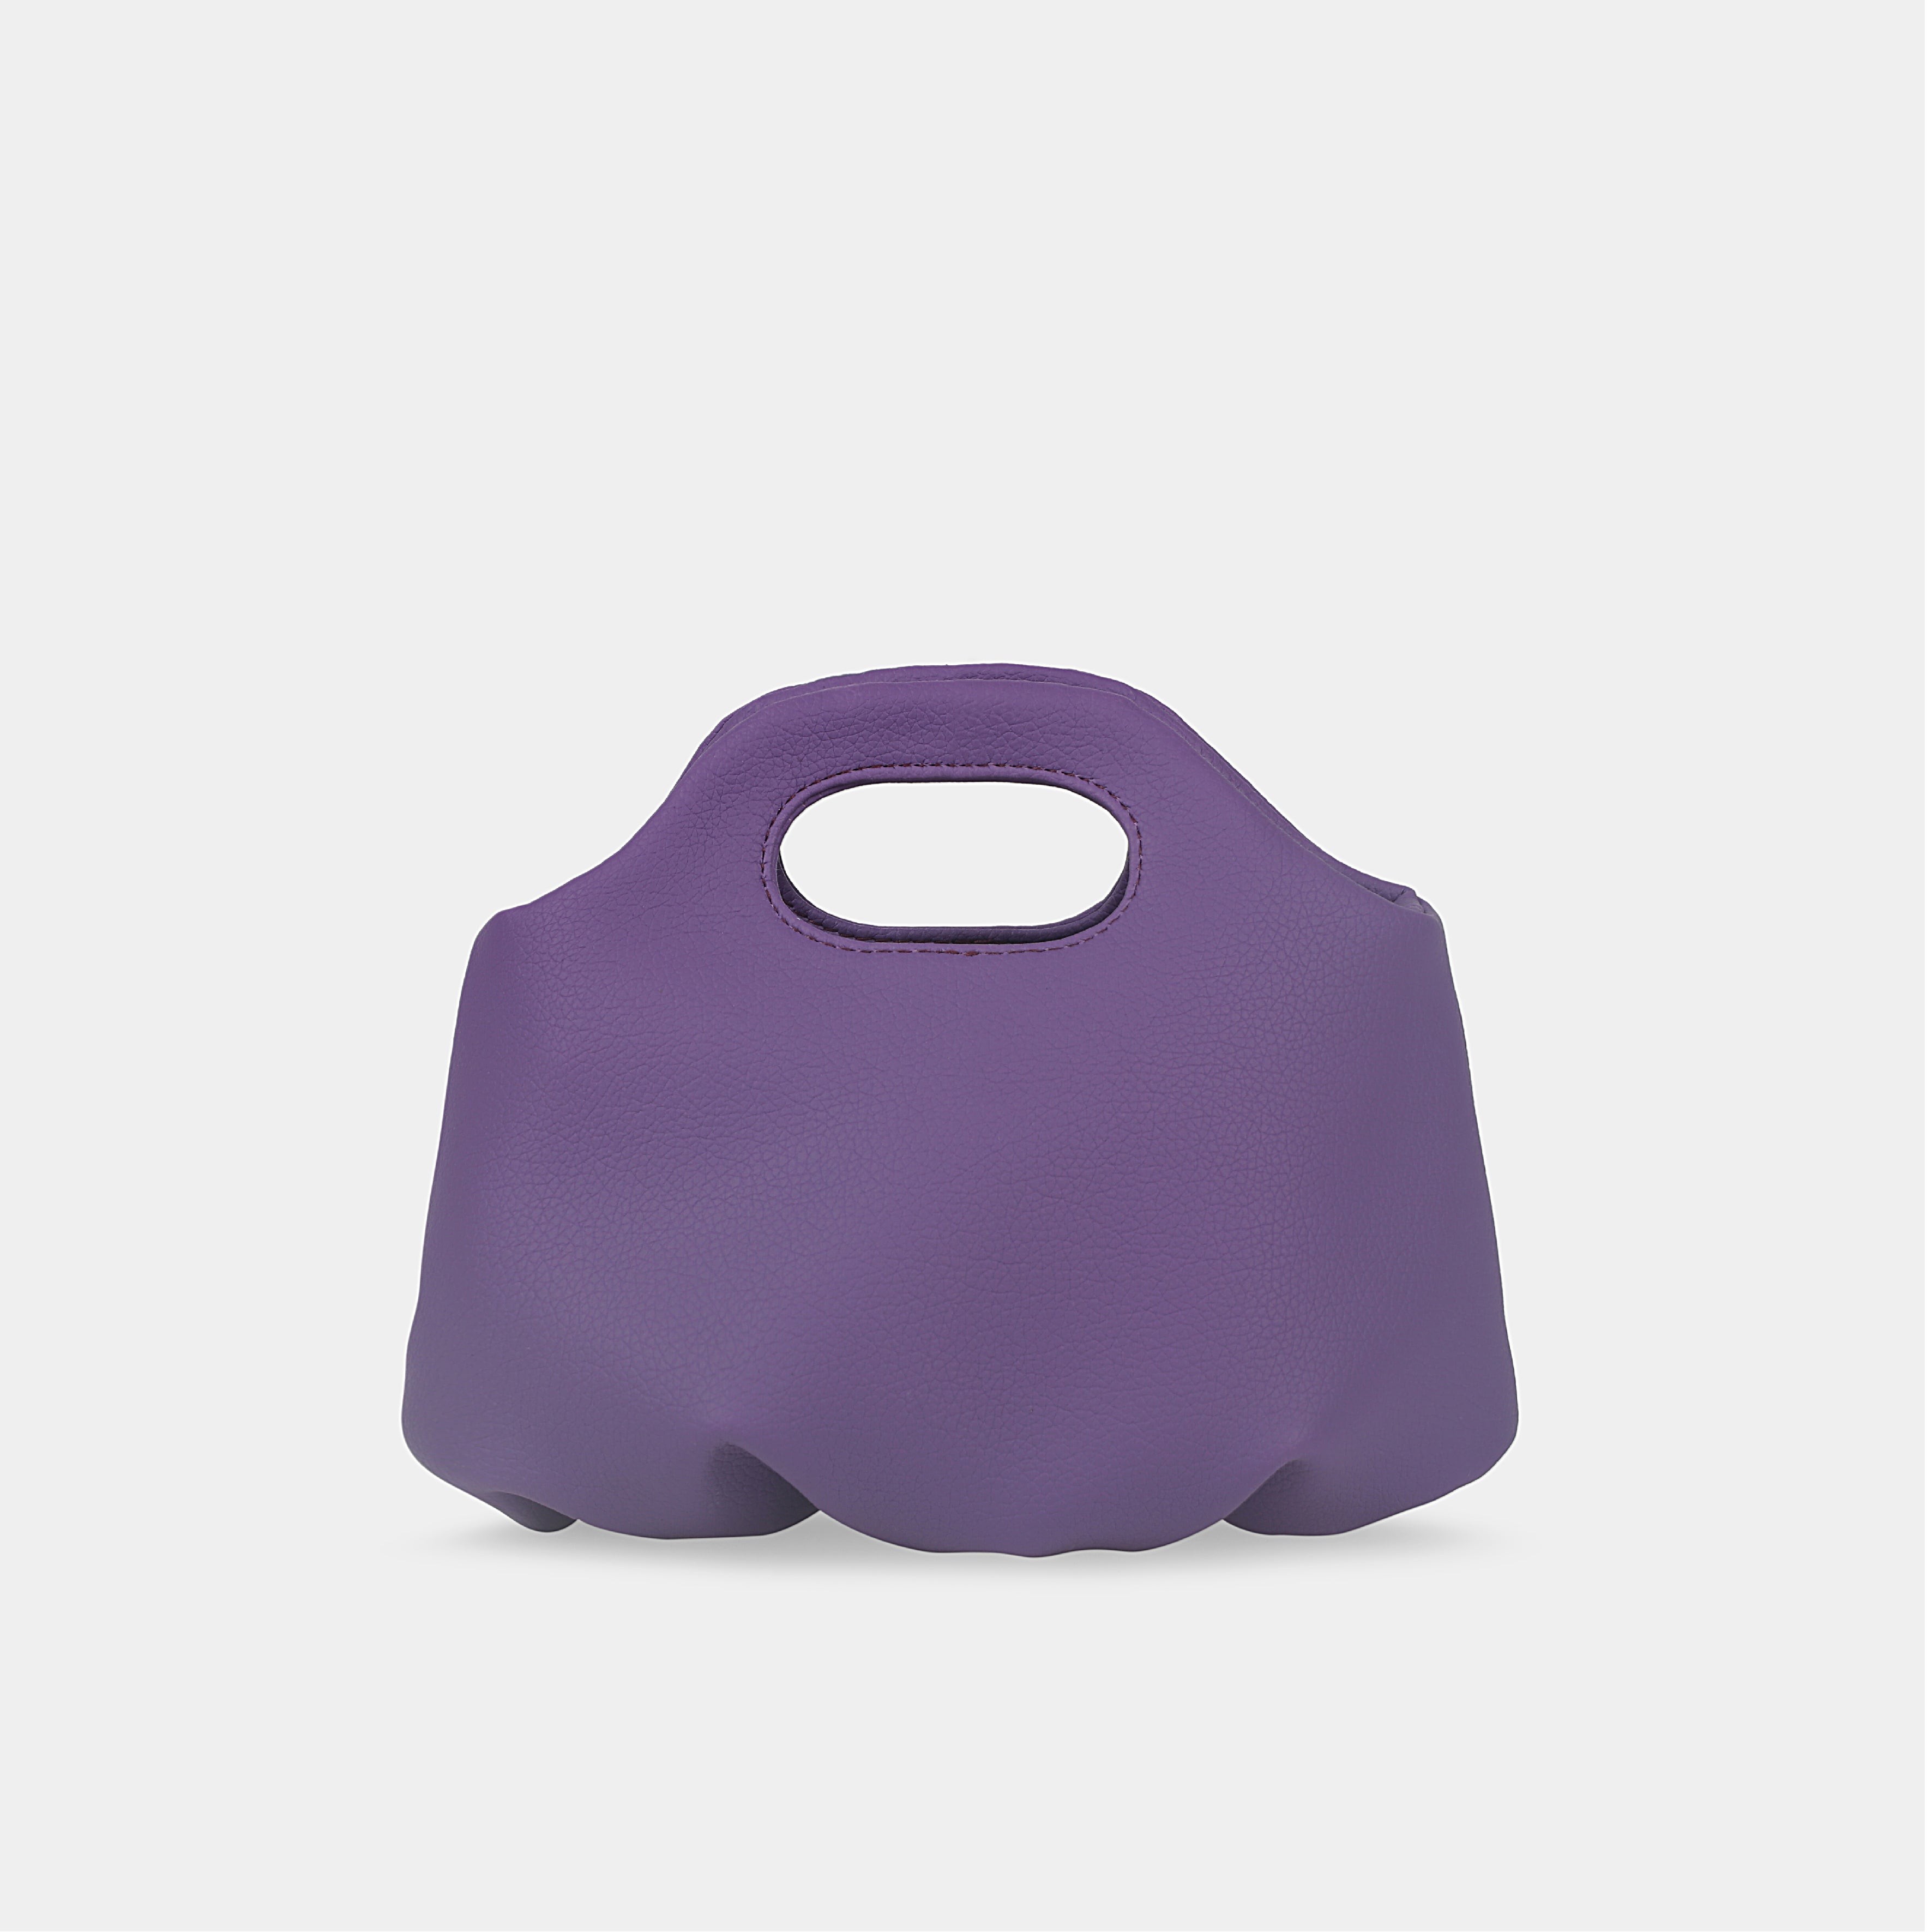 Flower Mini bag in purple